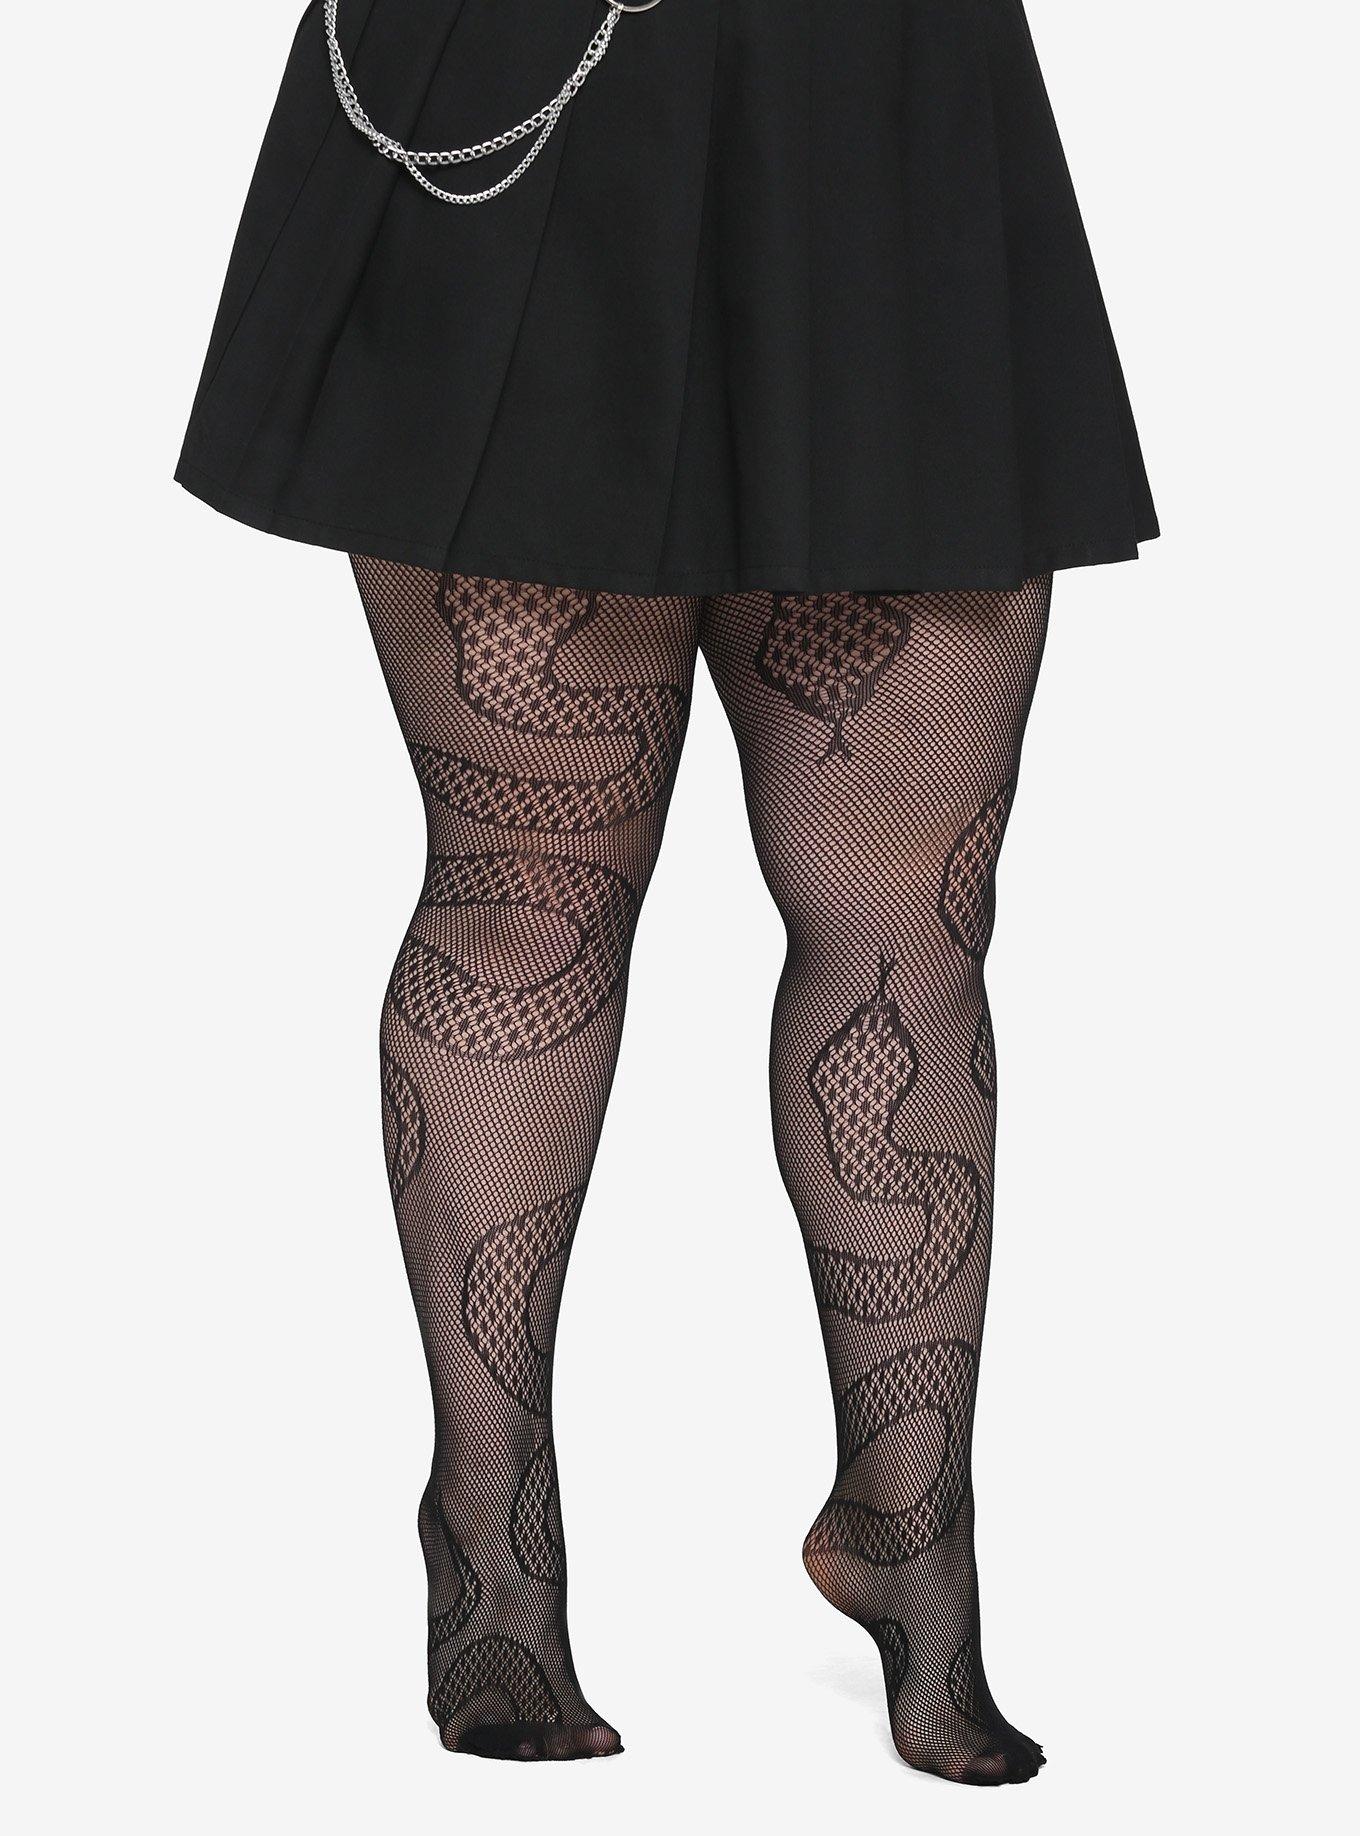 Black Fishnet Dress Plus Size, Hot Topic